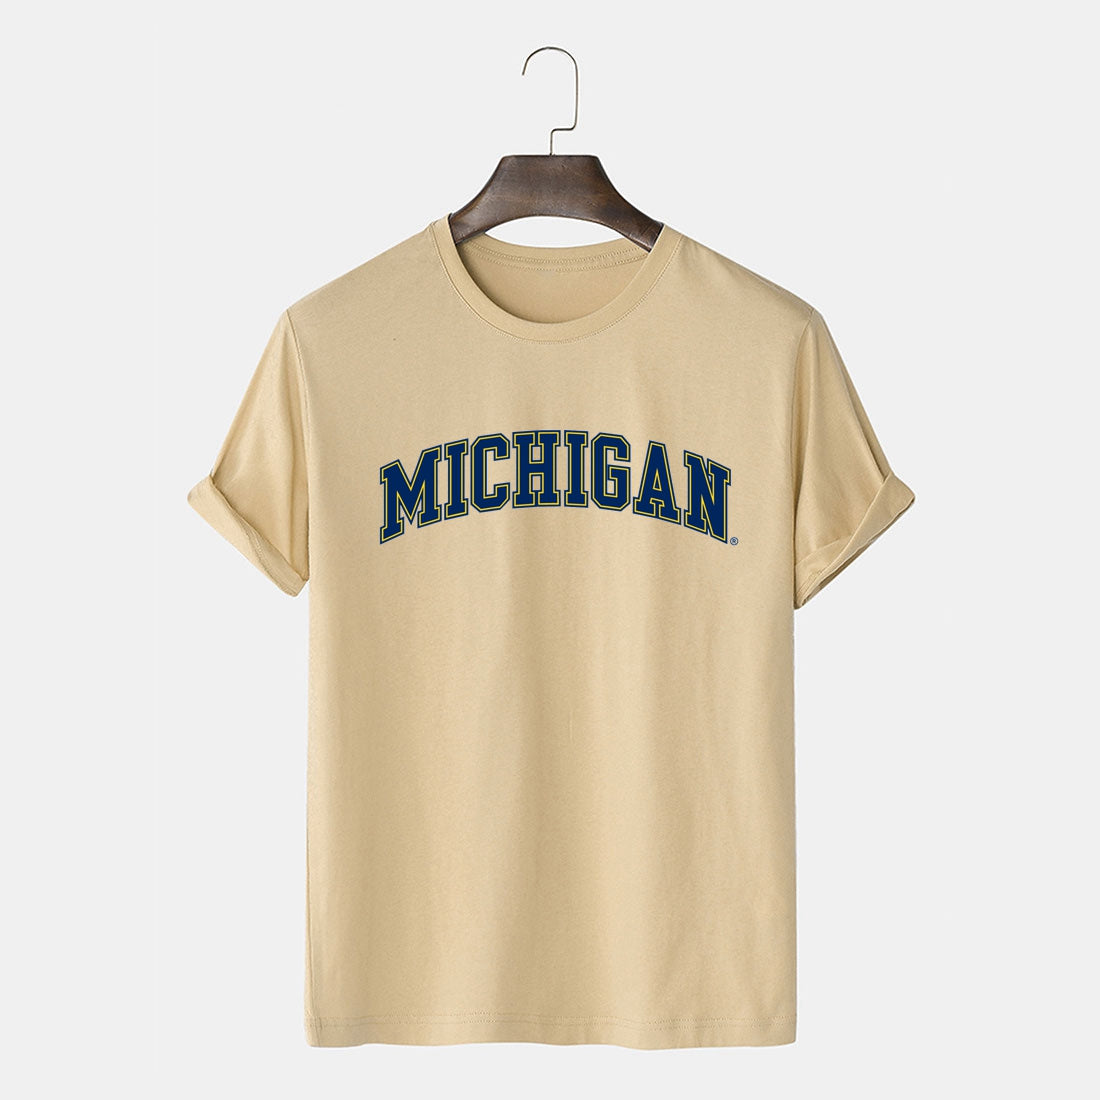 Michigan Letter Print Men's T Shirt Regular Fit Tee Short Sleeves Cotton Merch